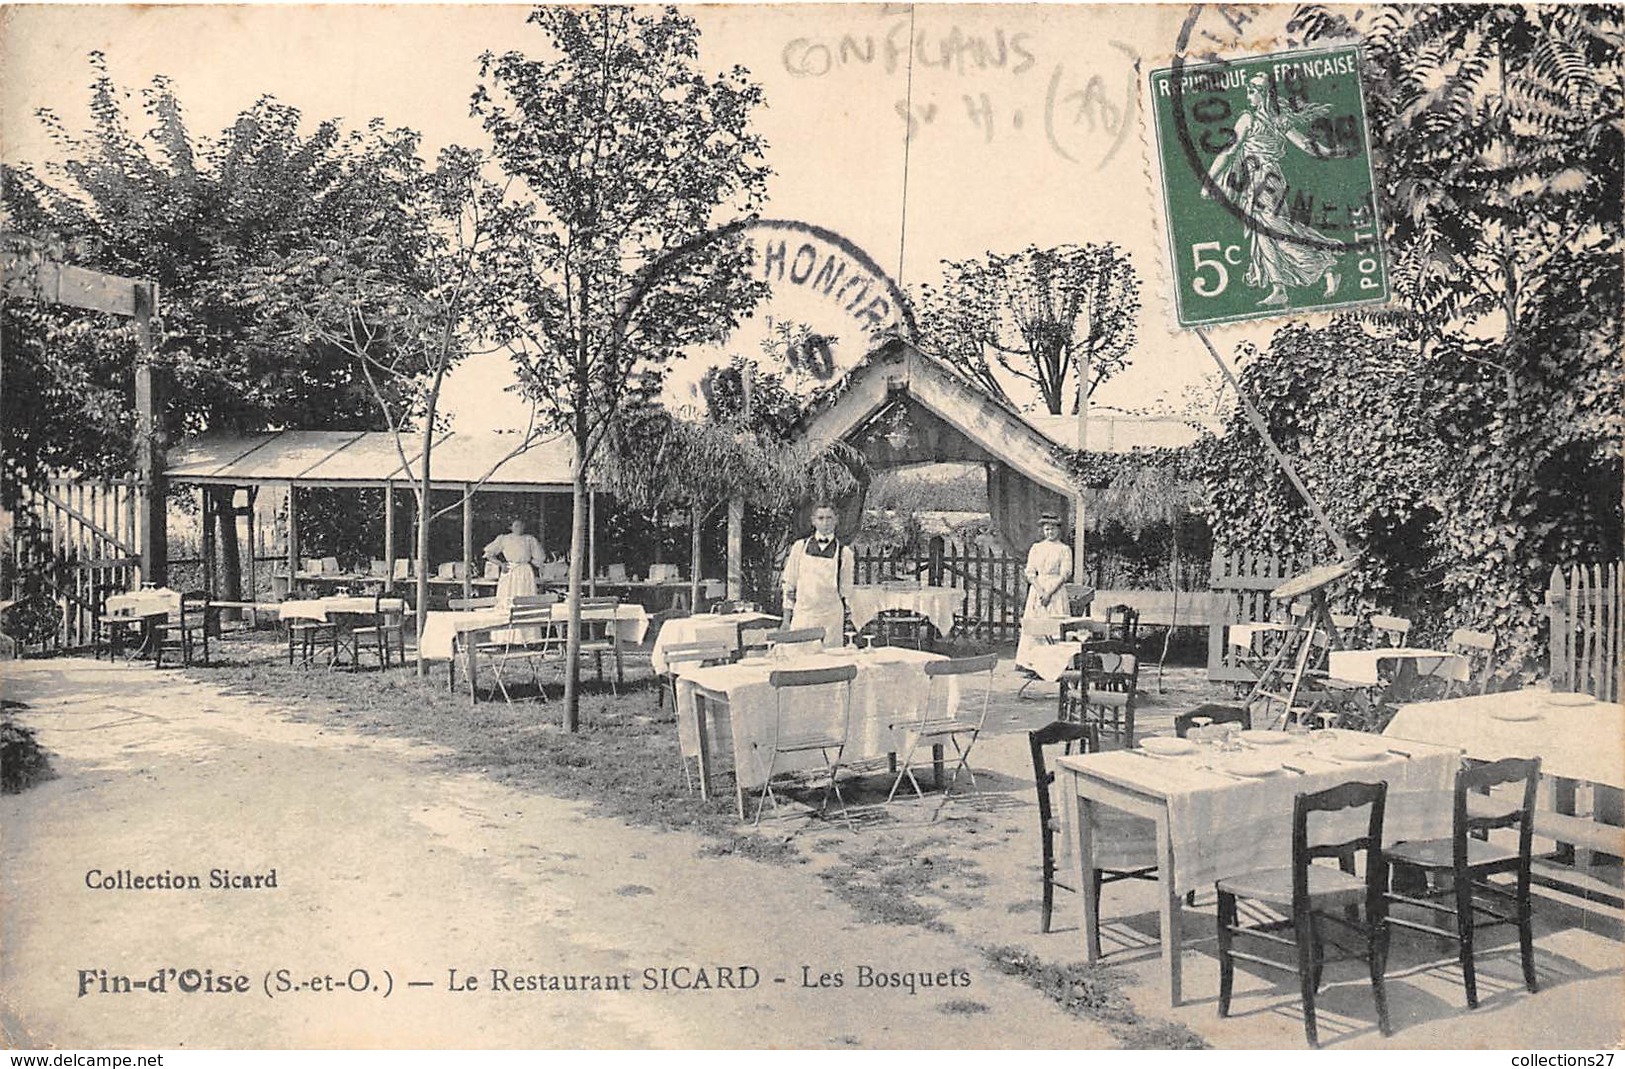 78-CONFLANS- LE RESTAURANT SICARD - LES BOSQUETS - Conflans Saint Honorine